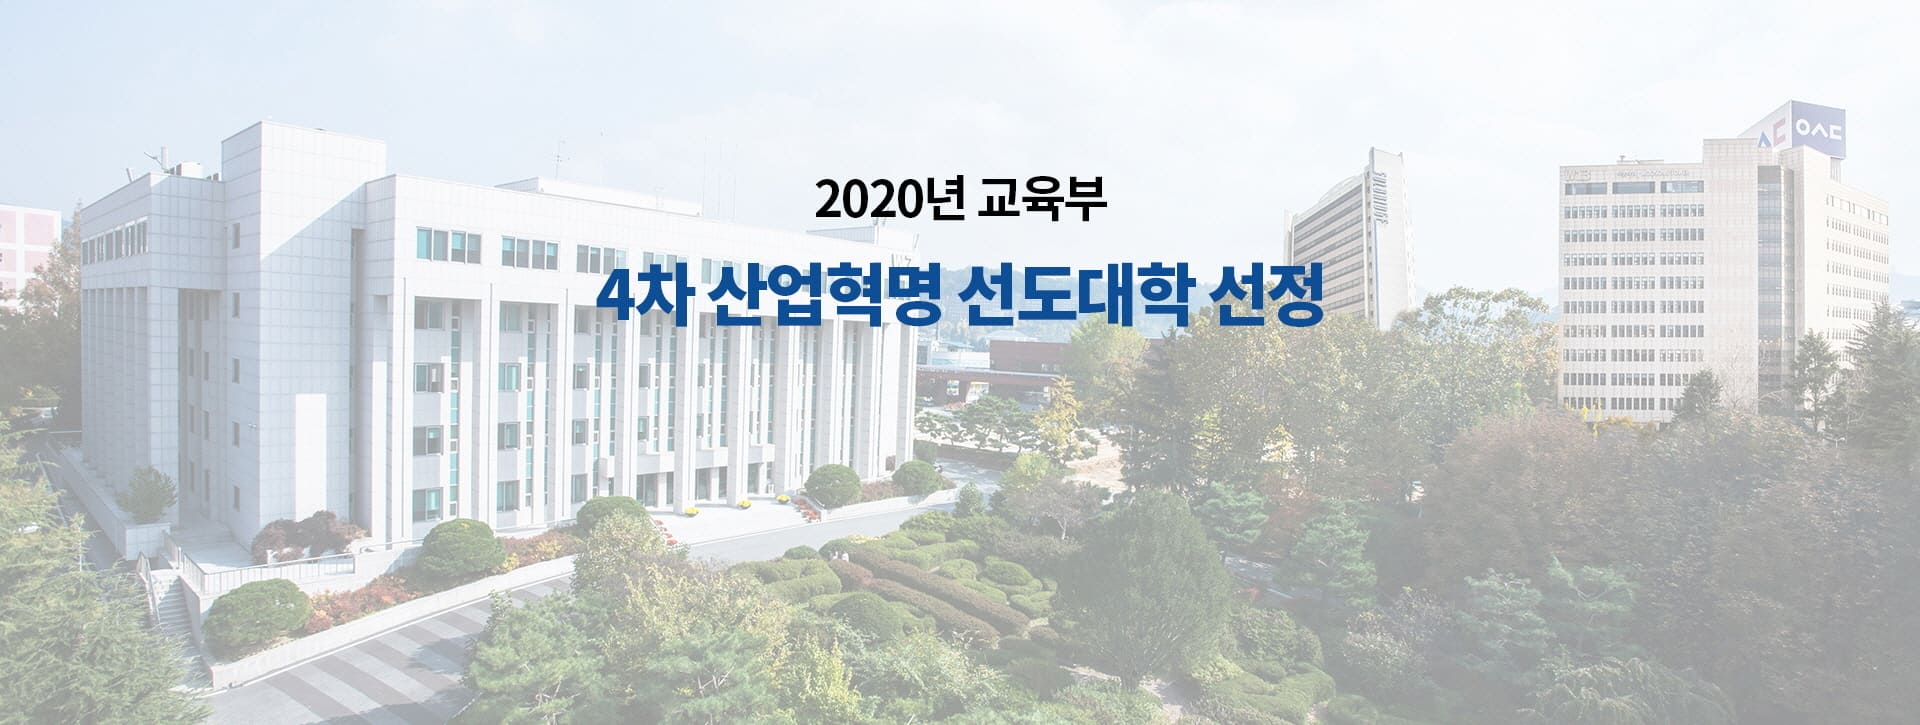 2020년 교육부 4차 산업혁명 선도대학 선정